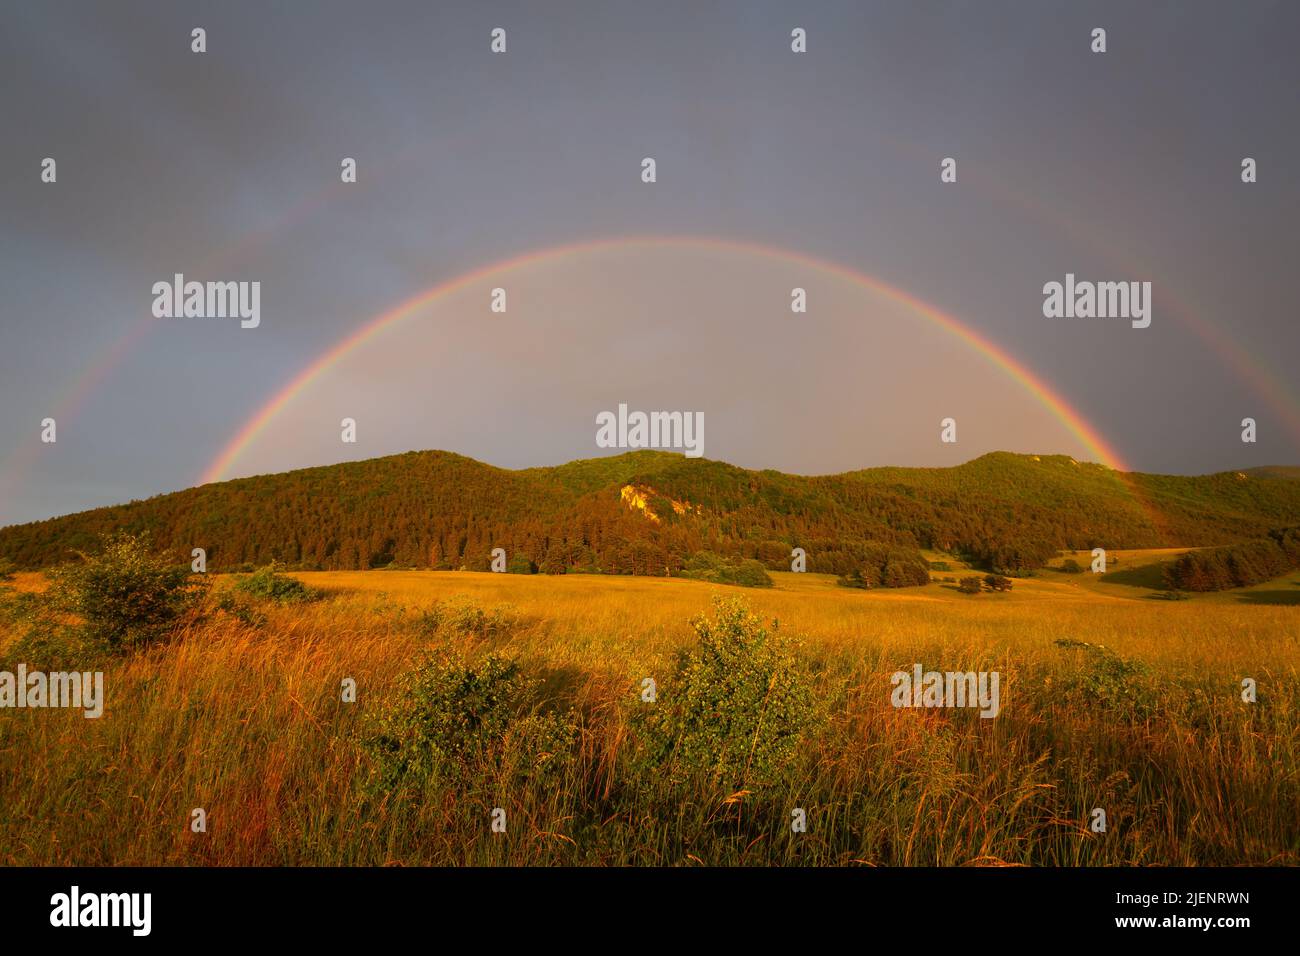 Rainbow over Velka Fatra mountains in Turiec region, Slovakia. Stock Photo